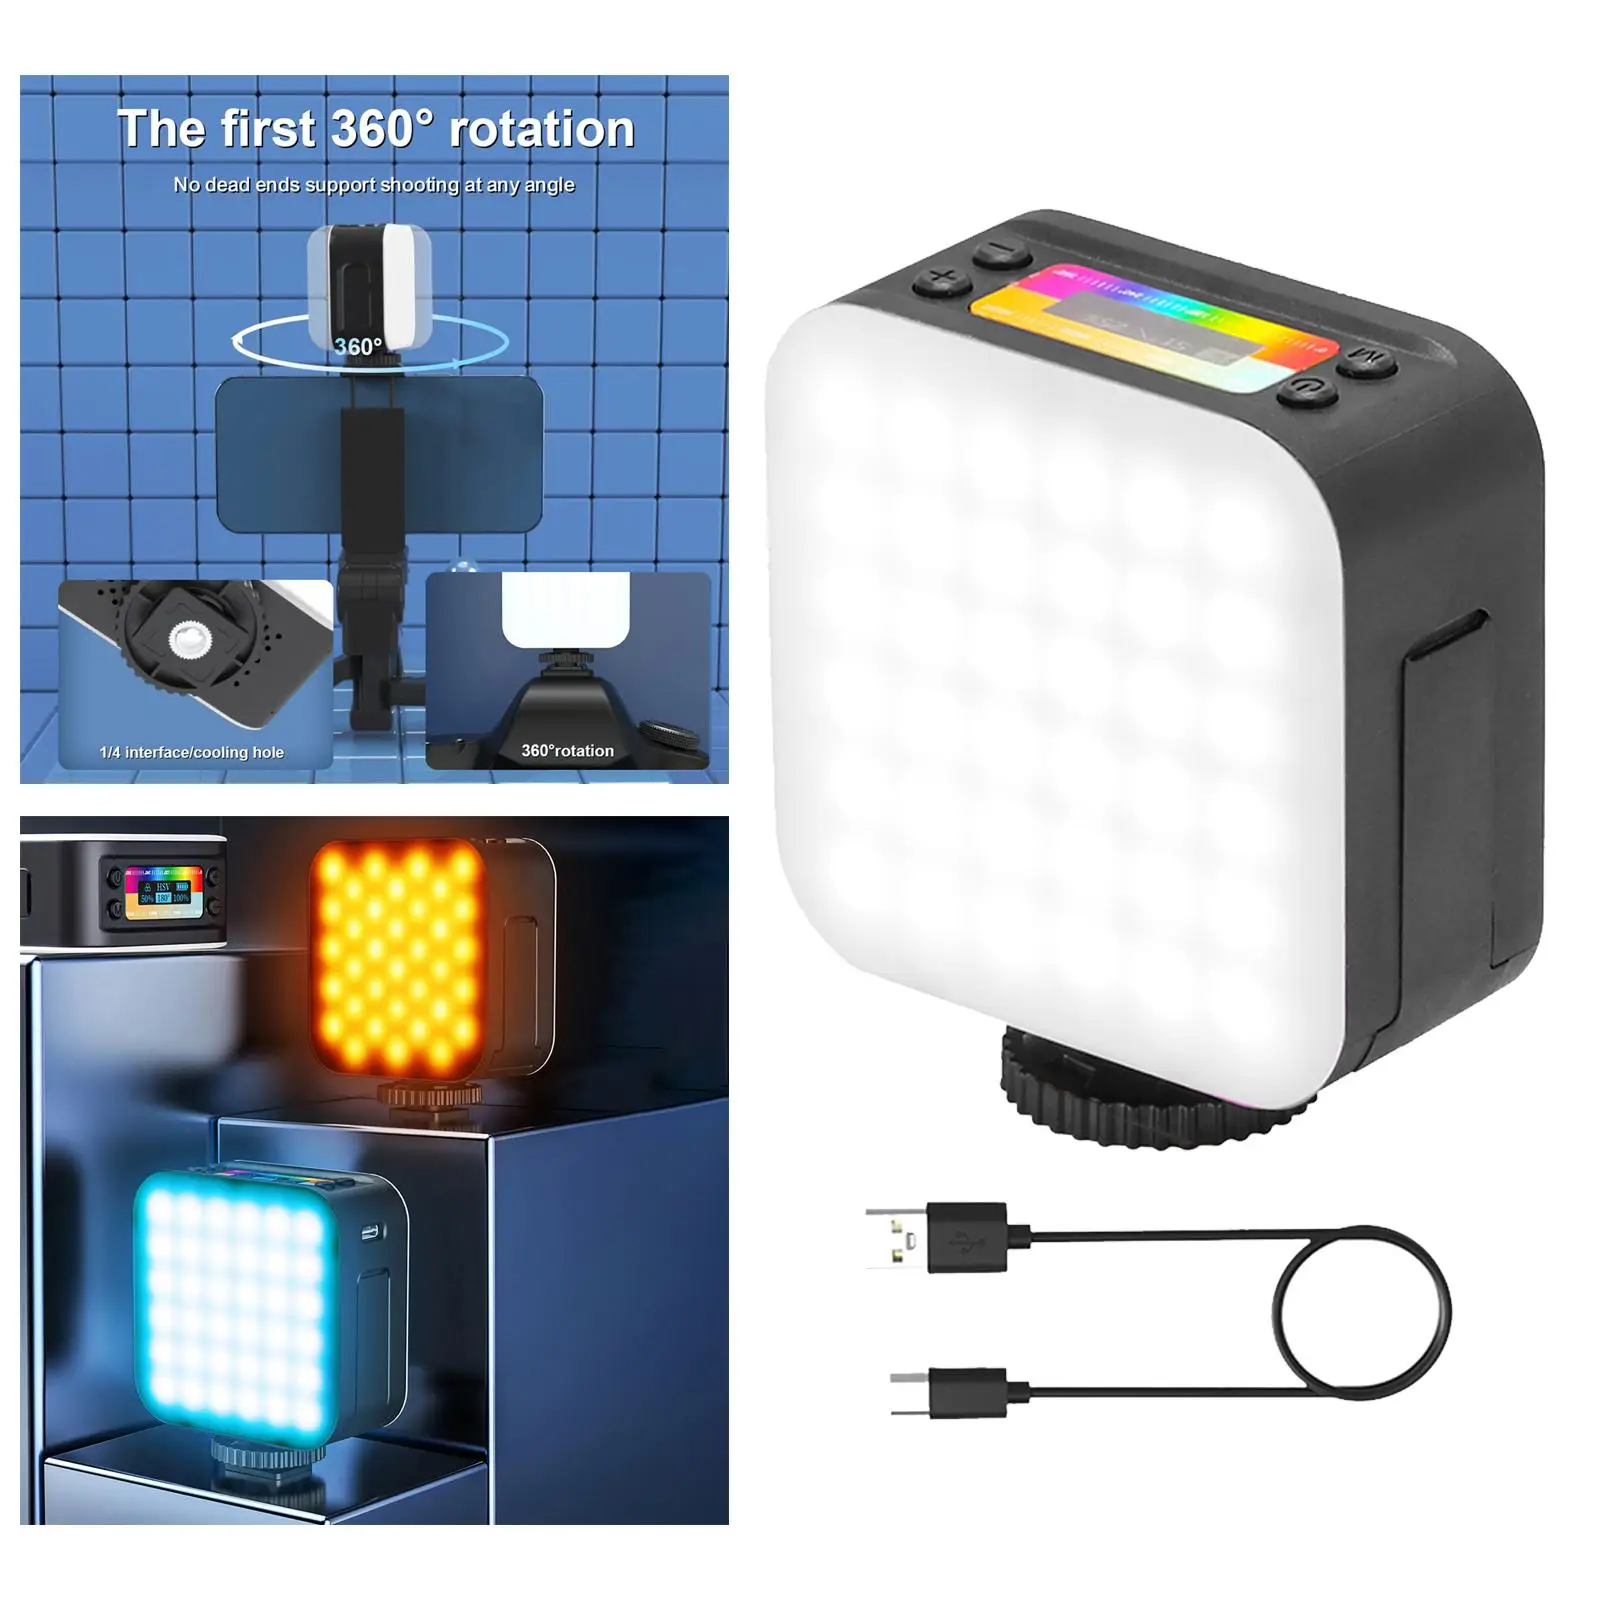 RGB светильник для видеосъемки, карманная Светодиодная лампа s для камеры, вращающаяся на 2500-9000 градусов Лампа для фотосъемки, Селфи, прямой т...